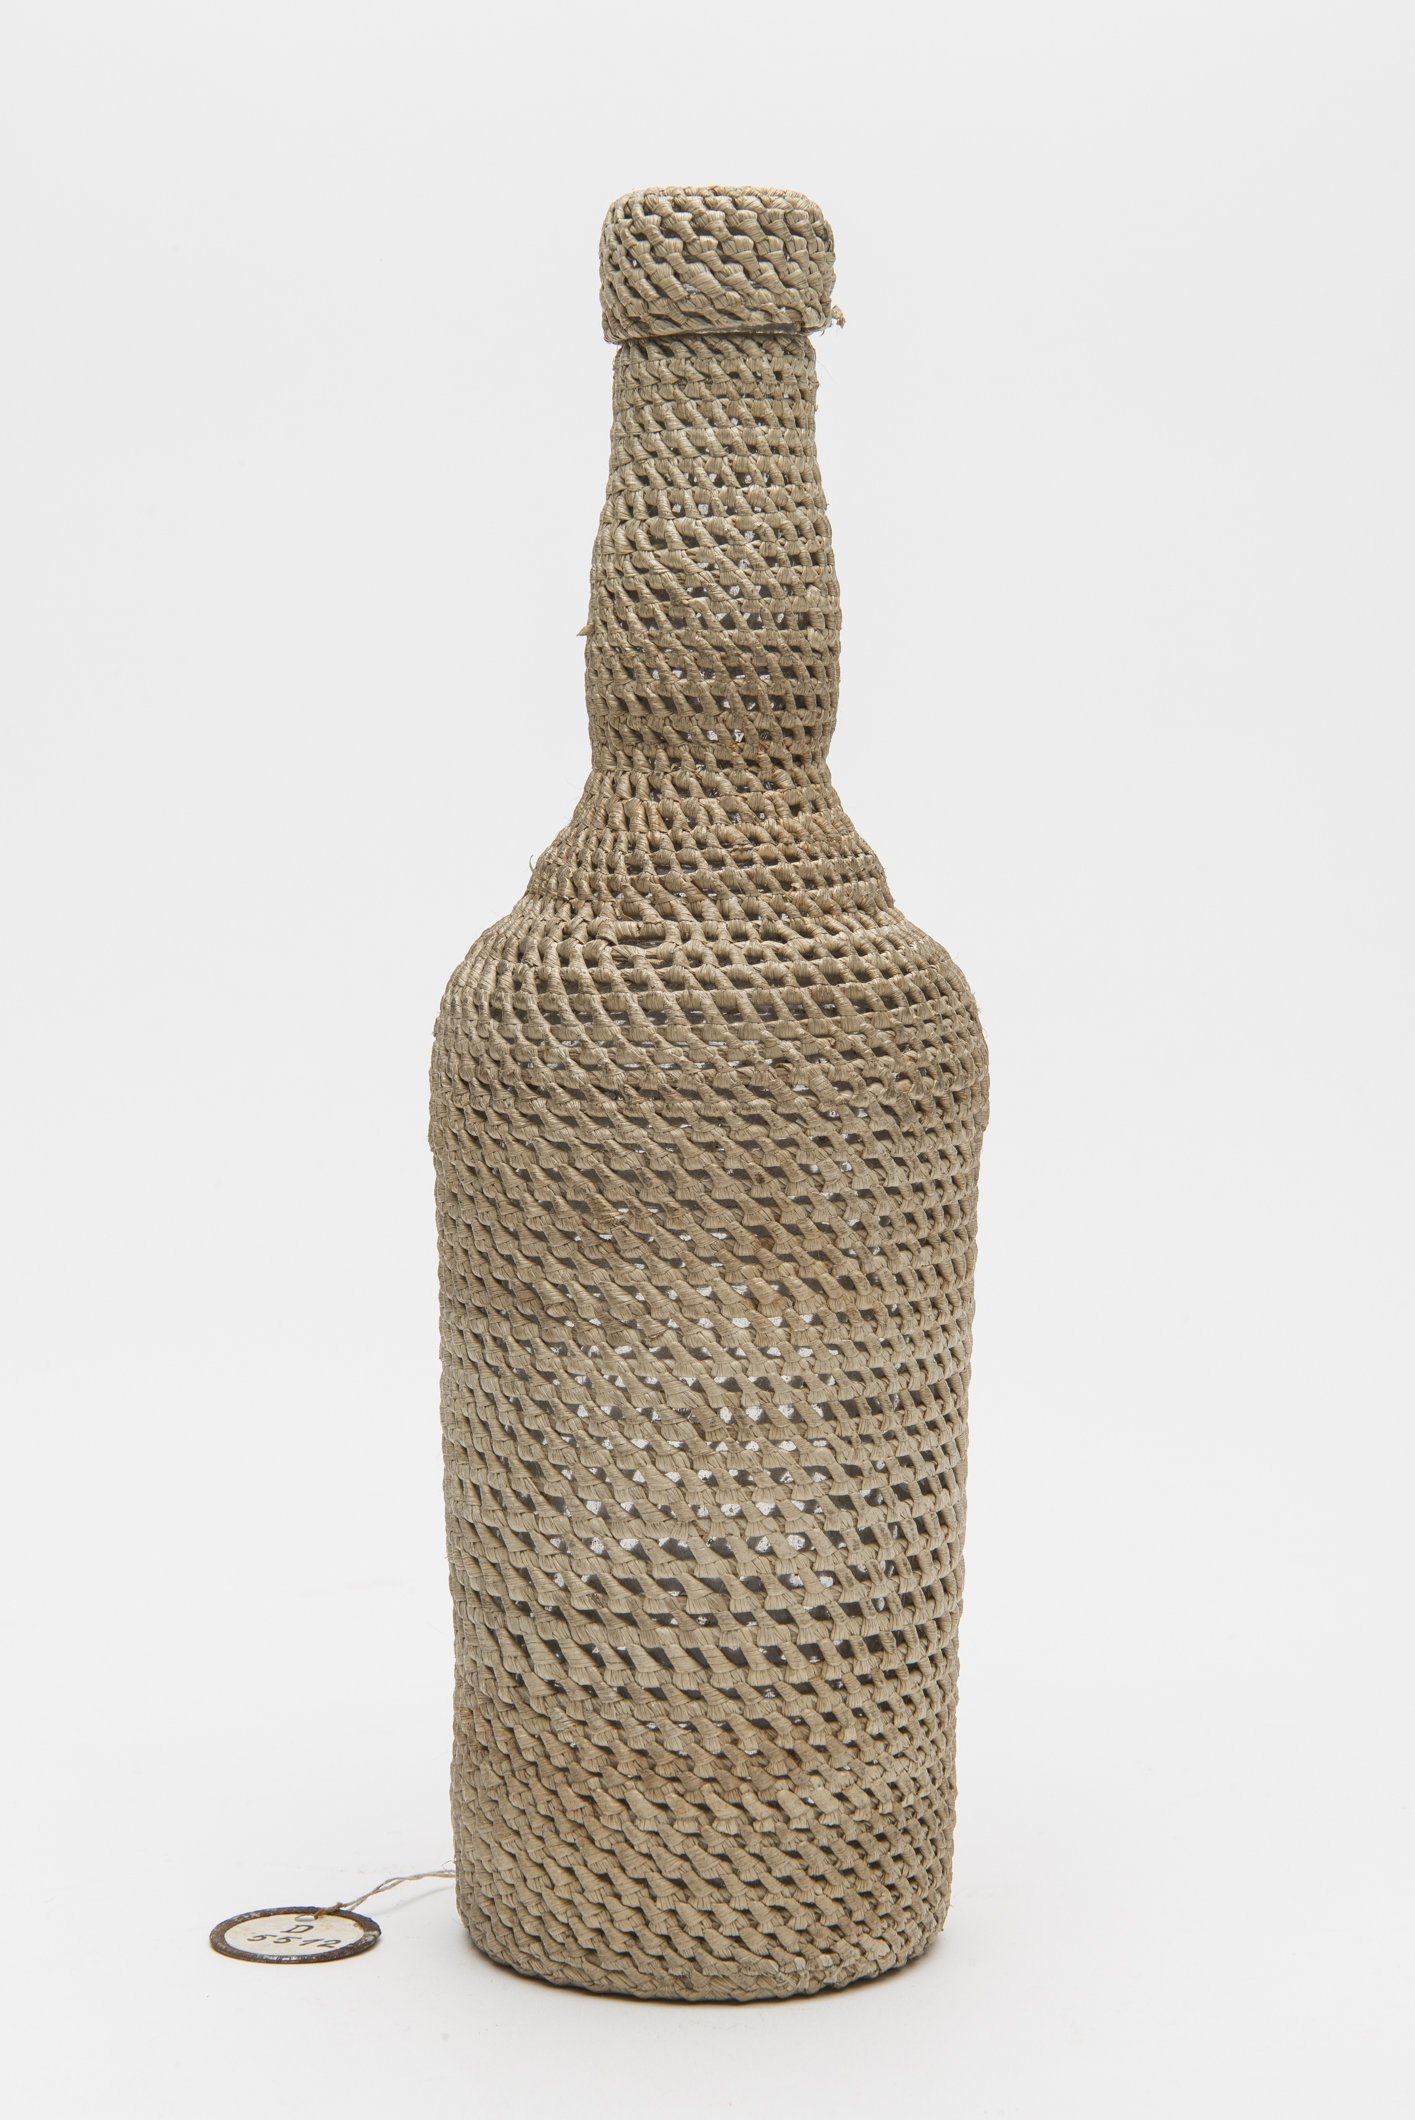 D05512 Flasche im Geflecht | woven bottle (Uebersee-Museum Bremen CC BY-SA)